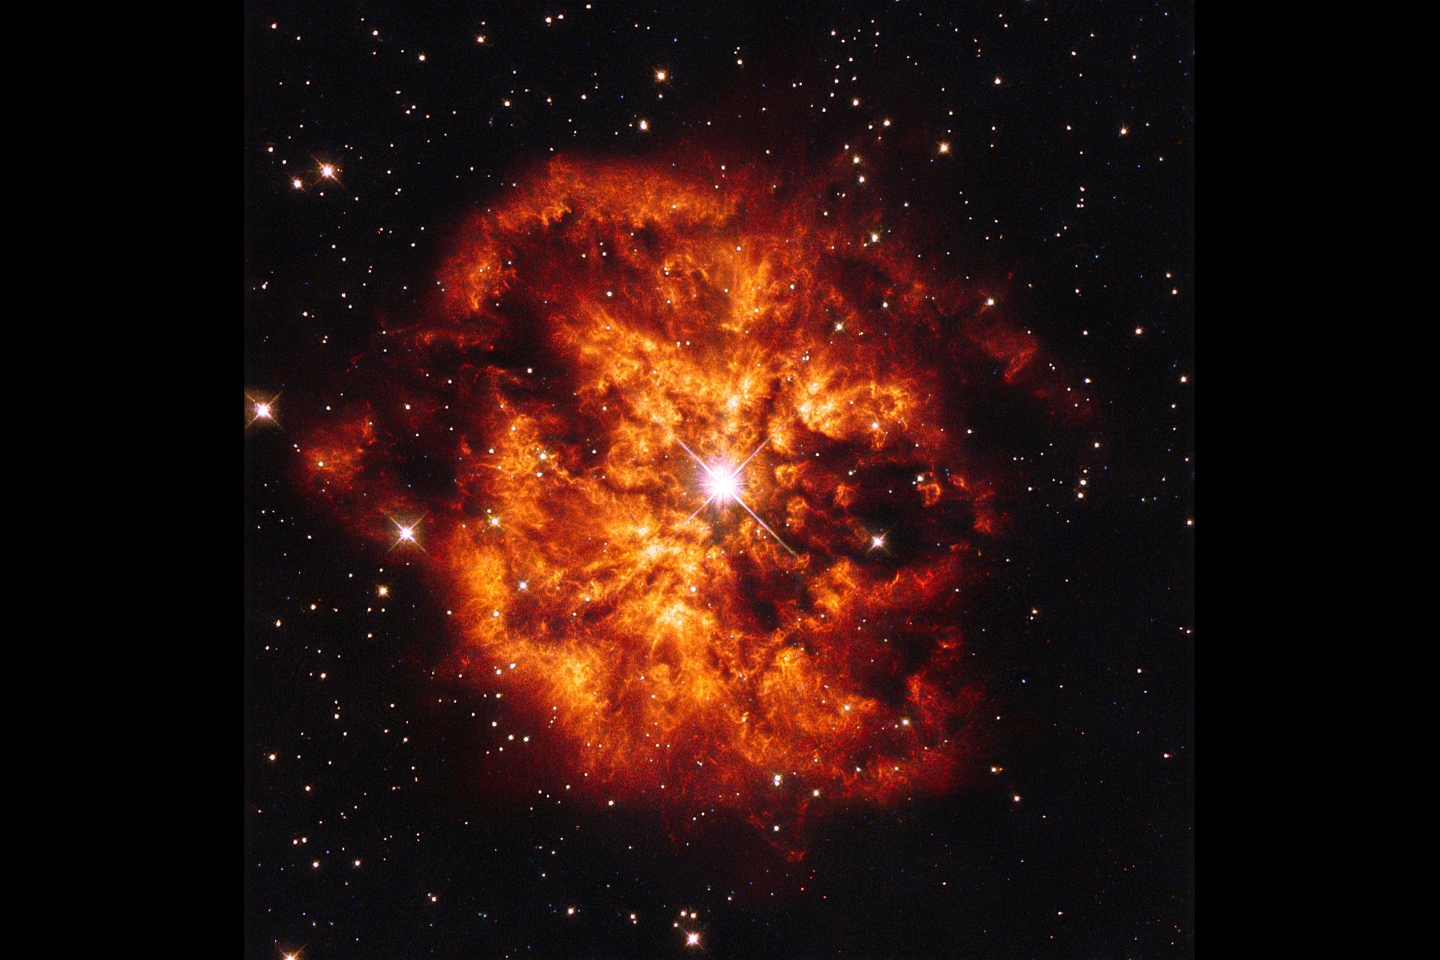 Зрелищная космическая пара, звезда класса Вольфа-Райе Hen 2-427 - более широко известное как WR 124 - и созданная ею туманность M1-67, которая ее окружает. Звезда Hen 2-427 ярко сияет в самом центре этого взрывного изображения и вокруг горячих скоплений окружающего газа, которые выбрасываются в космос со скоростью более 150 000 км в час.